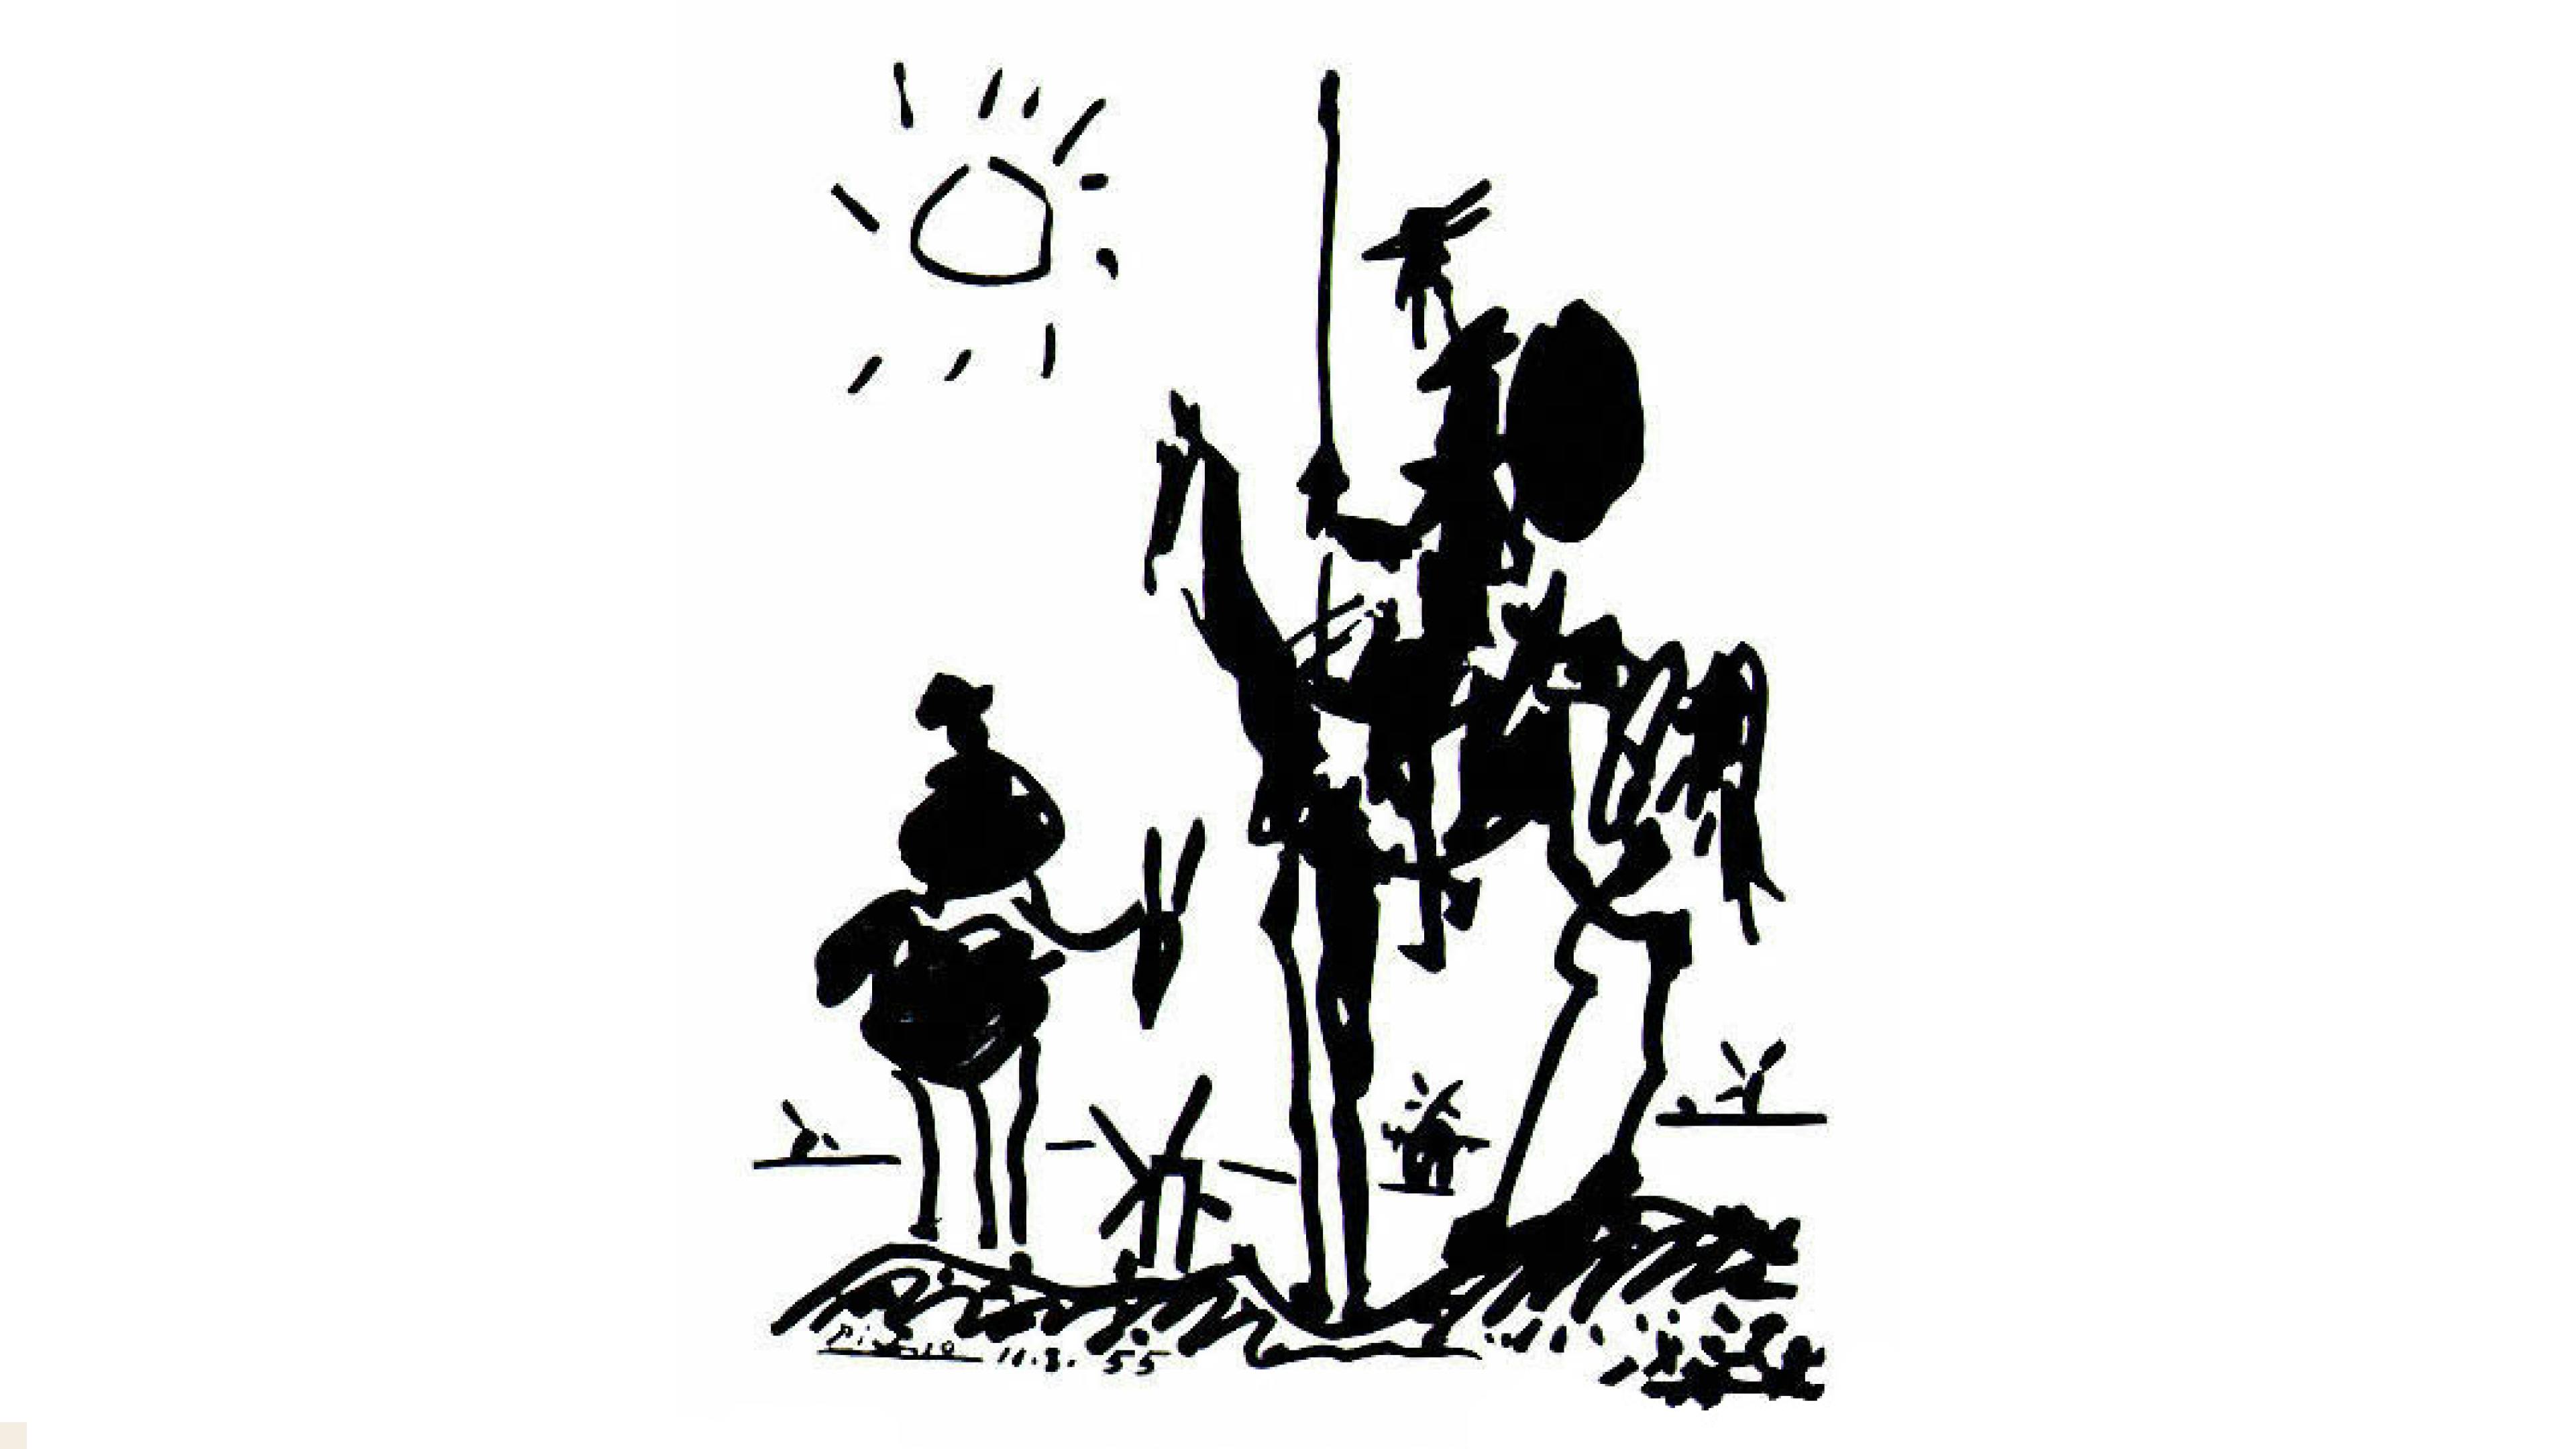 Don Quioxte and Sancho Panza